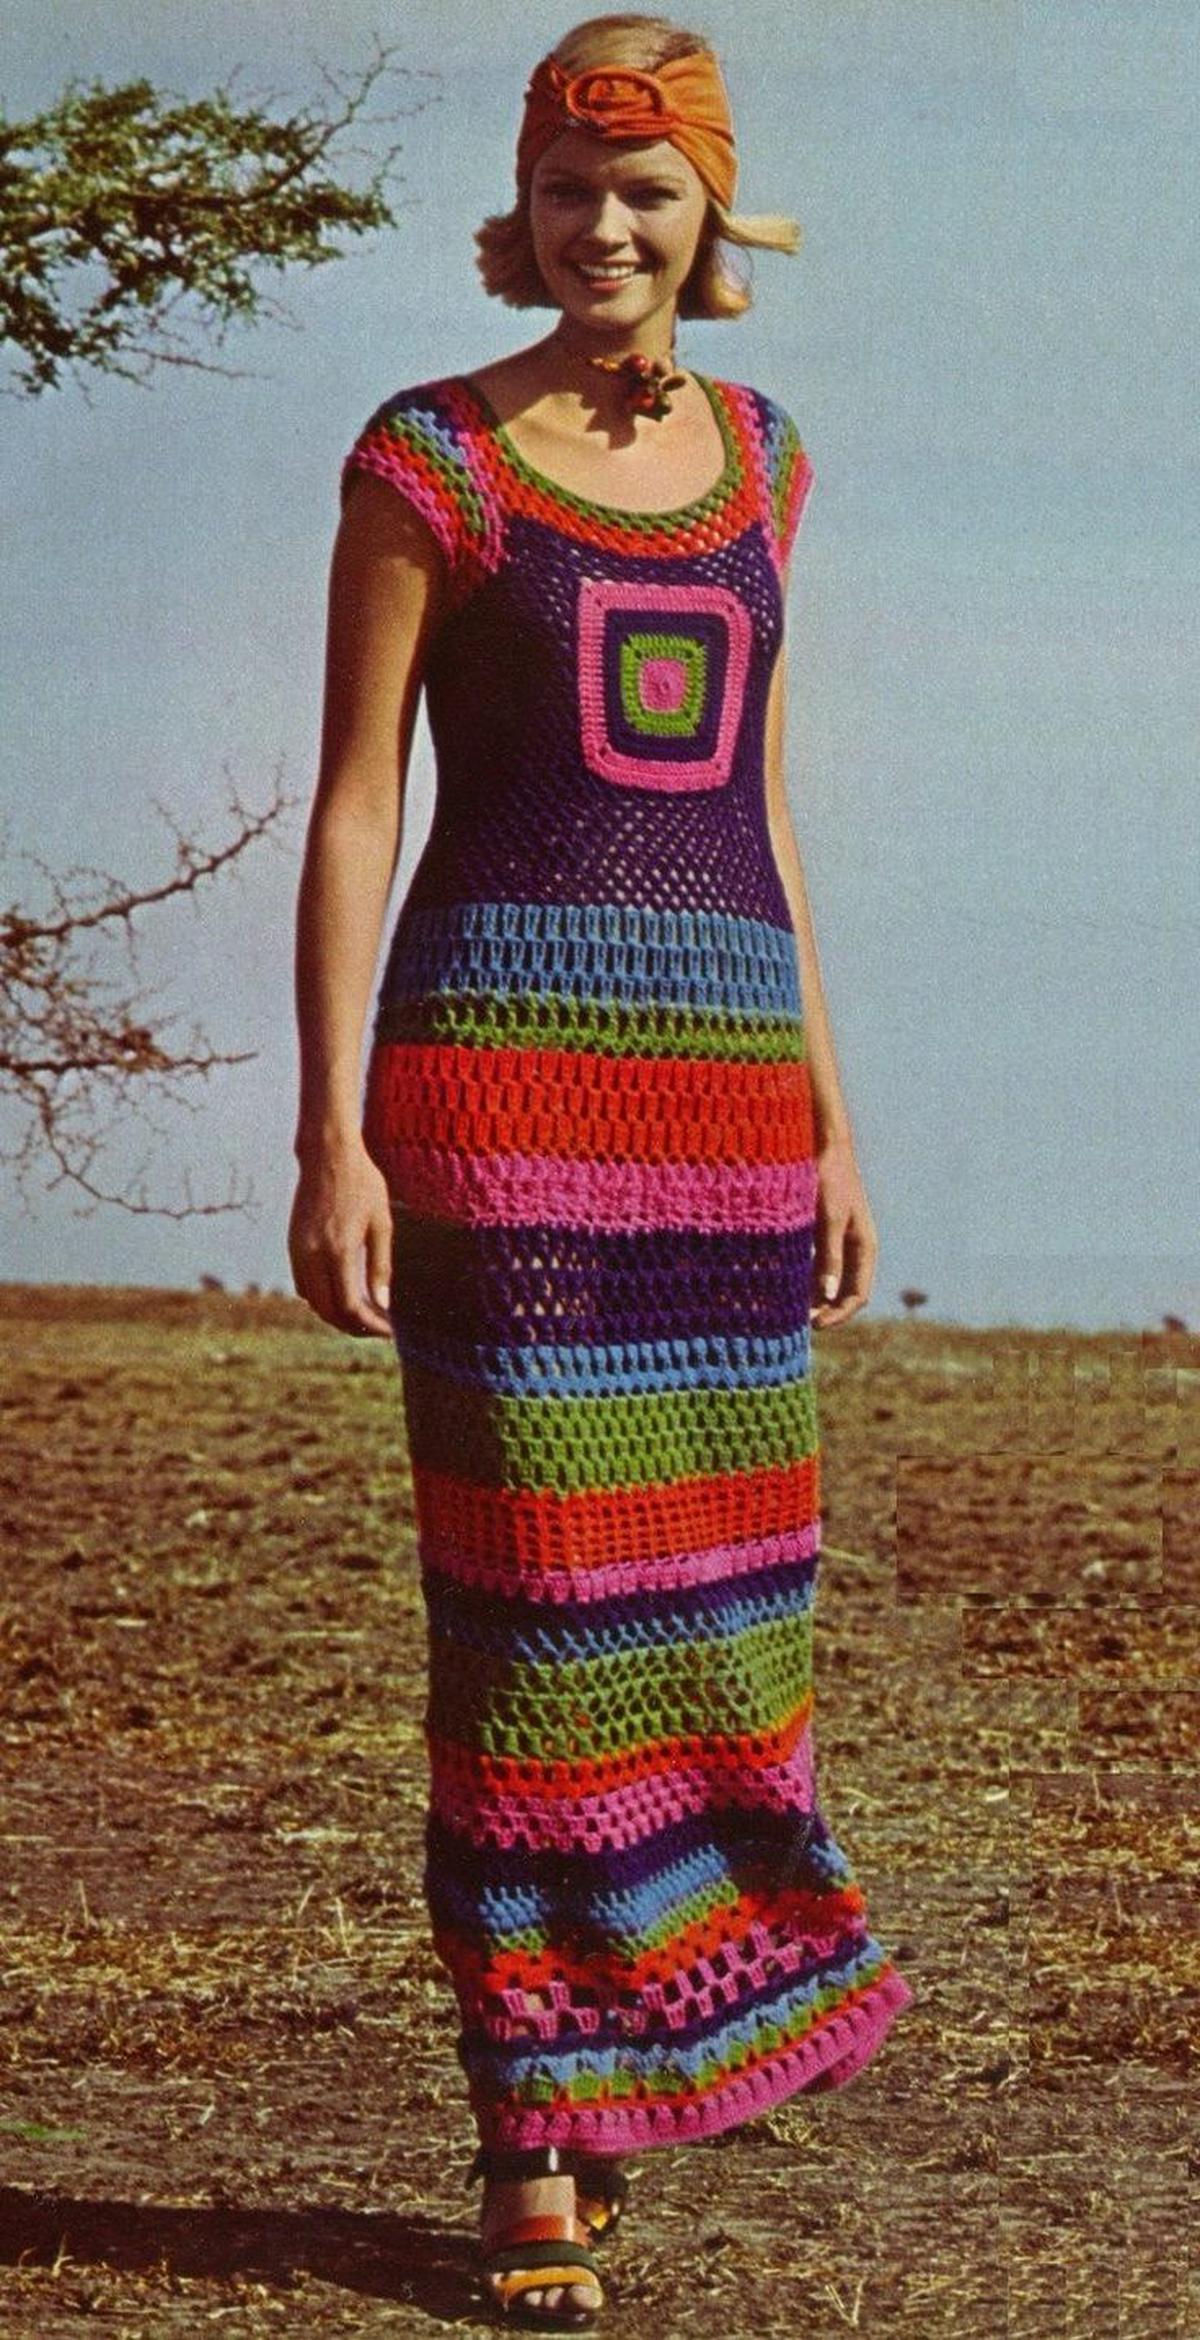 Tejido a crochet en los 60s. | Vestido a crochet de los años 60s. (Especial: Pinterest).